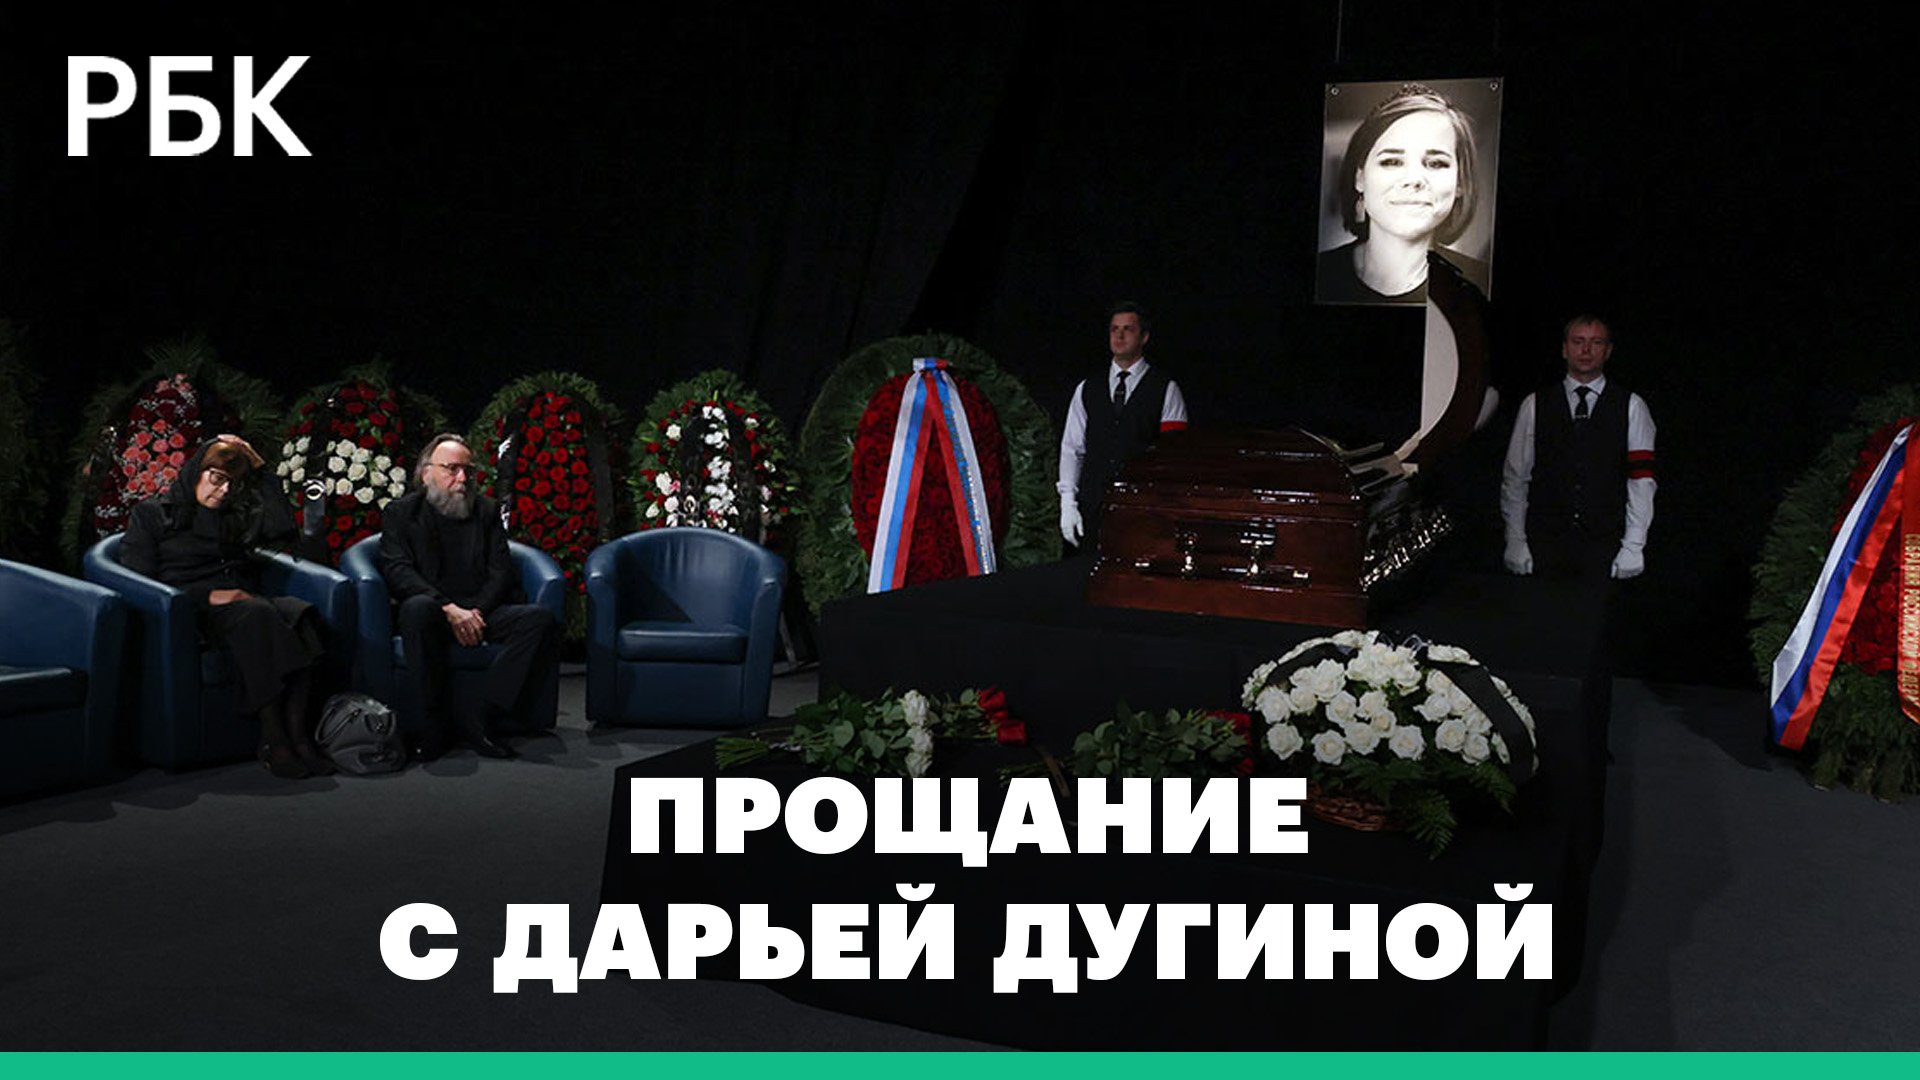 «У нее не было страха». В Москве прошла церемония прощания с Дарьей Дугиной: видео